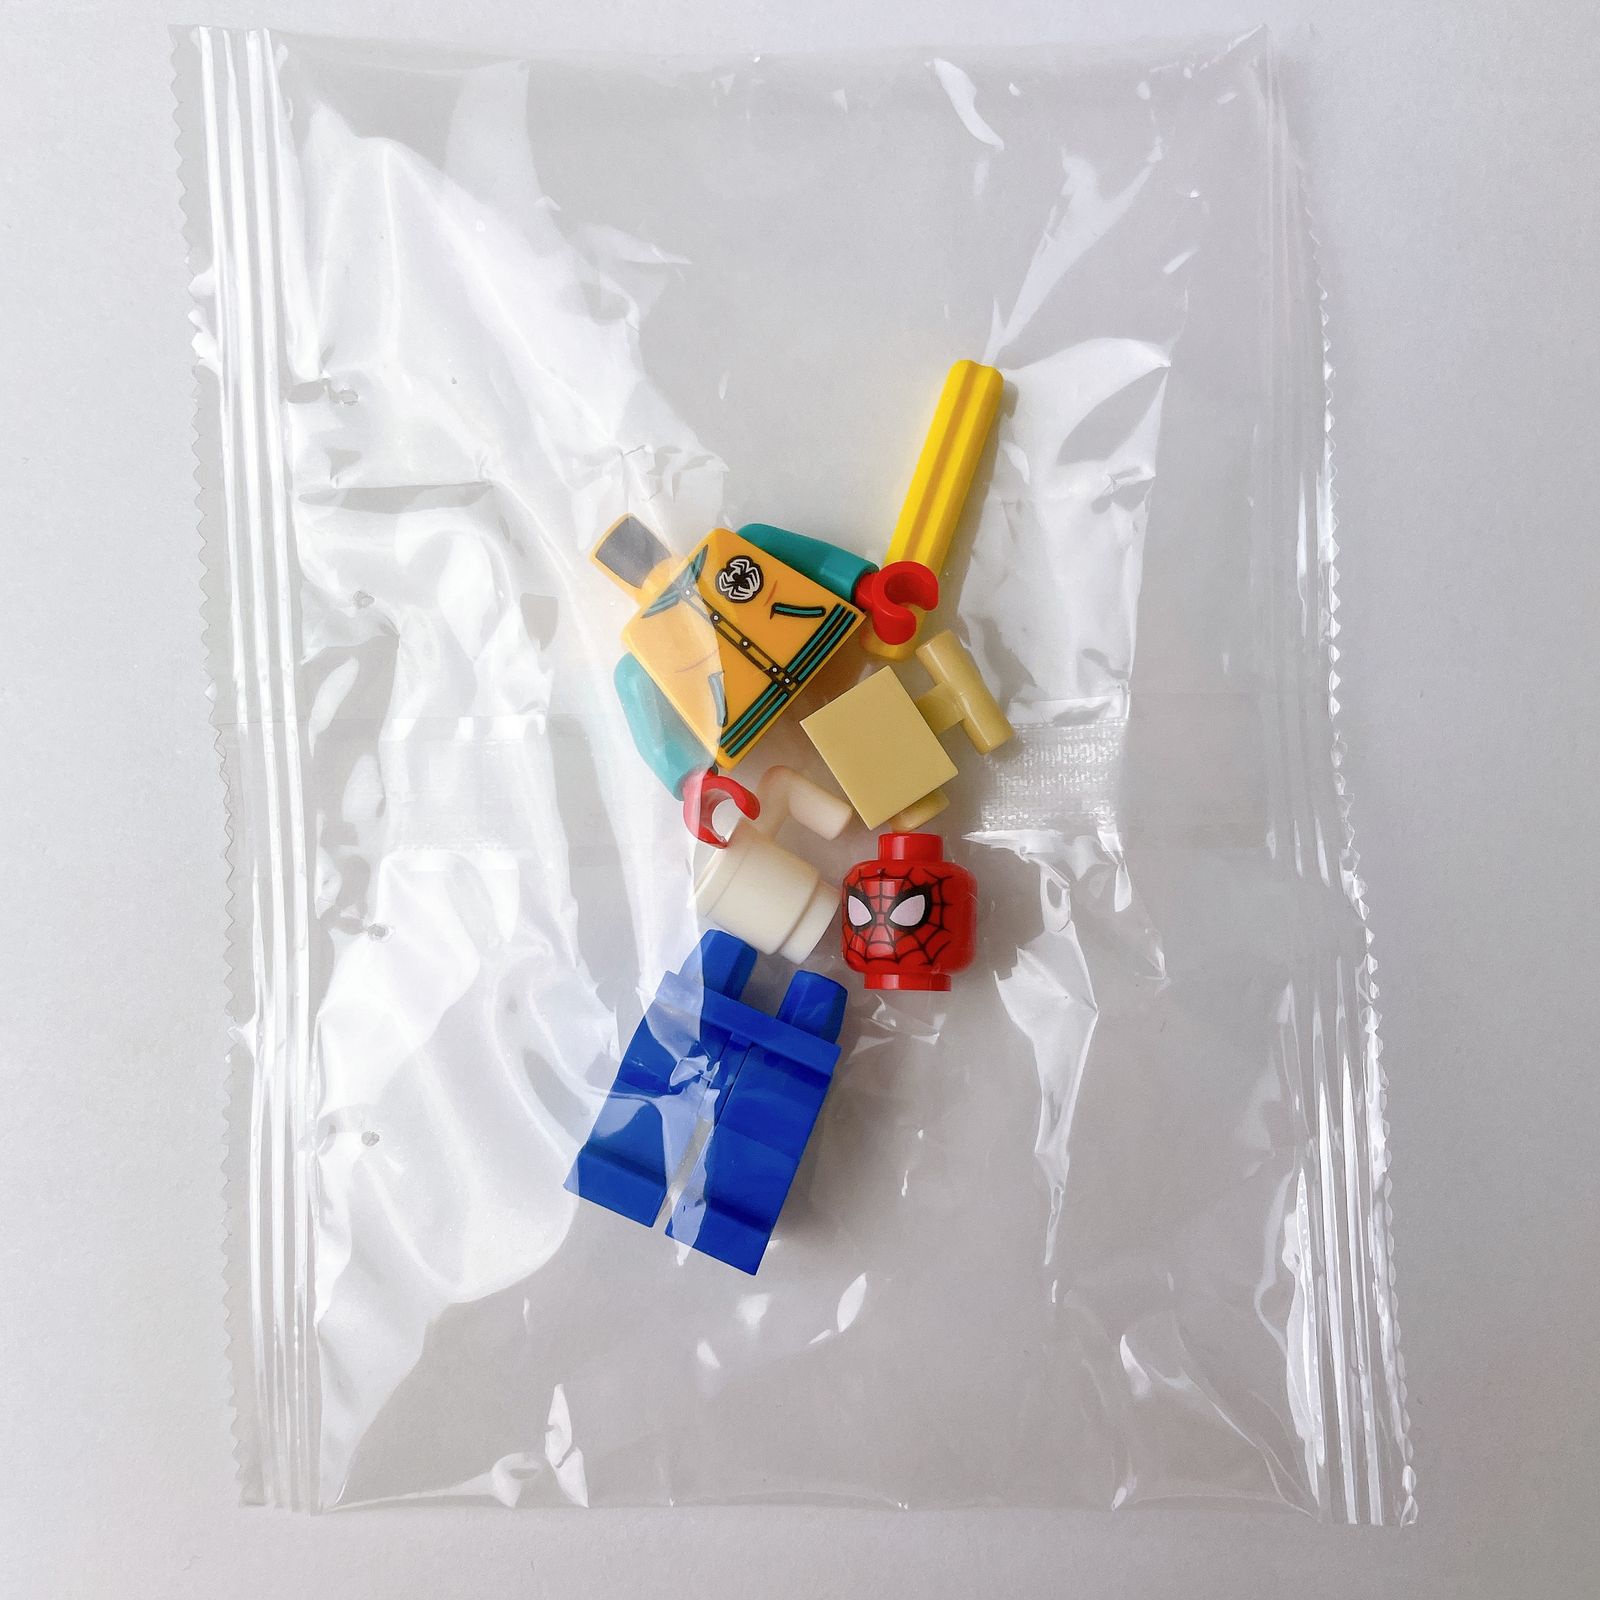 LEGO スパイダーマン スタジャン Ver. #76196 ミニフィグ - メルカリ